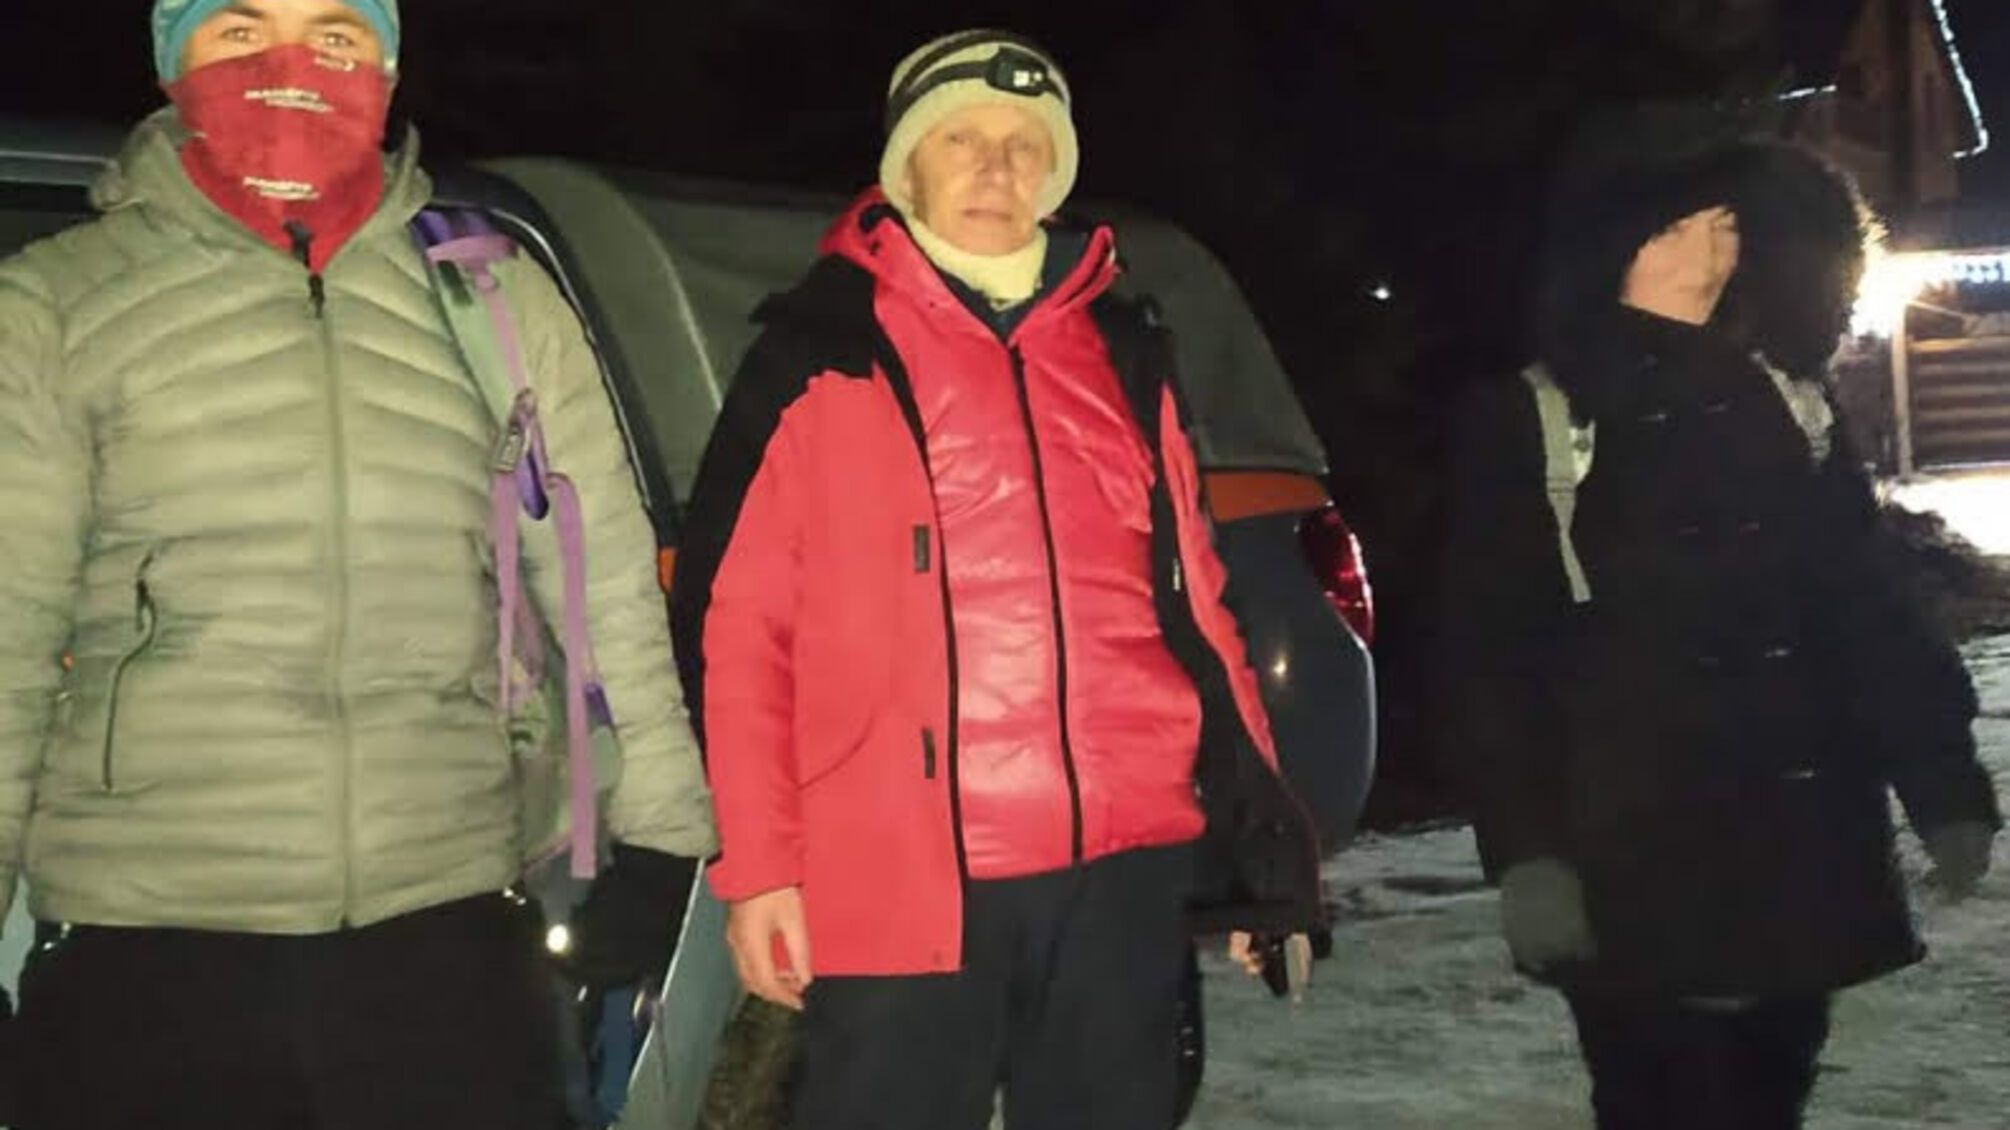 Івано-Франківська область: рятувальники знайшли жінку, що загубилася в гірській місцевості